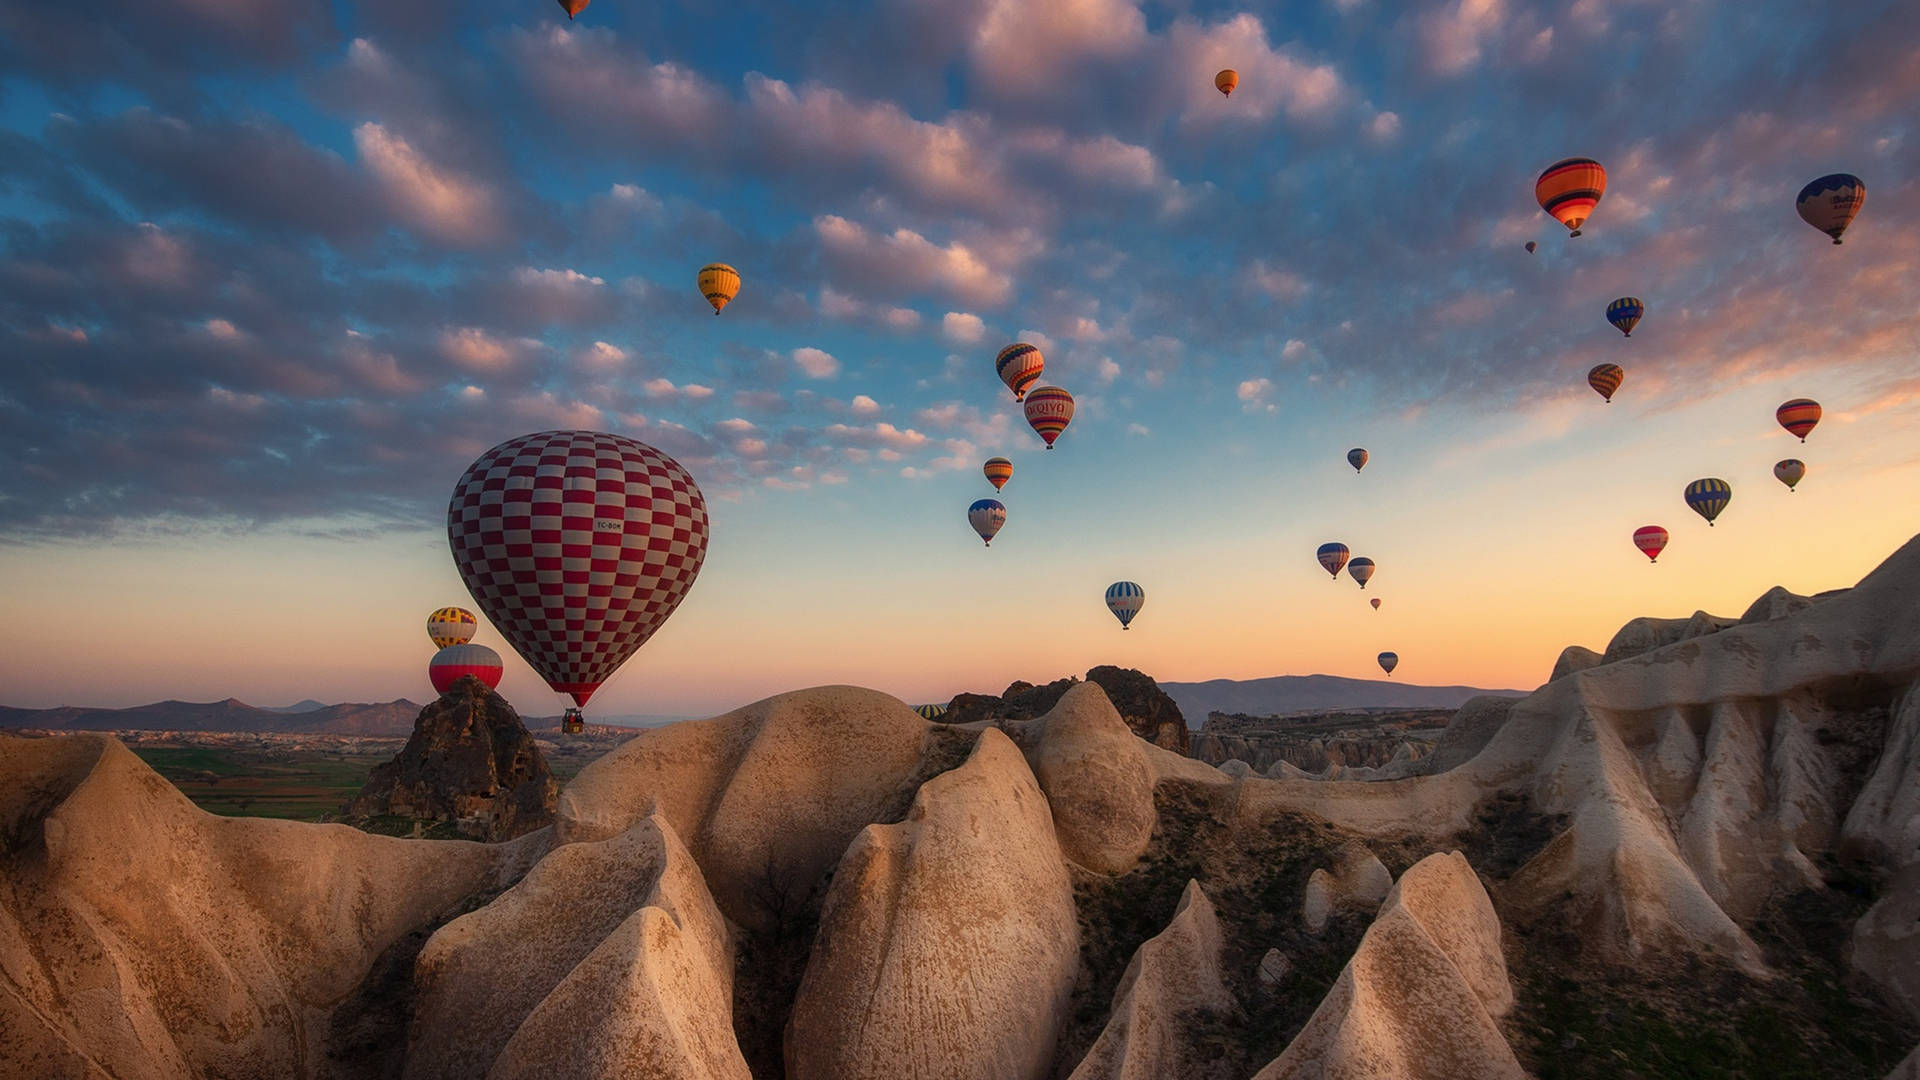 Kan weerstaan Gespecificeerd Gelijkwaardig 100+] Hot Air Balloon Wallpapers for FREE | Wallpapers.com